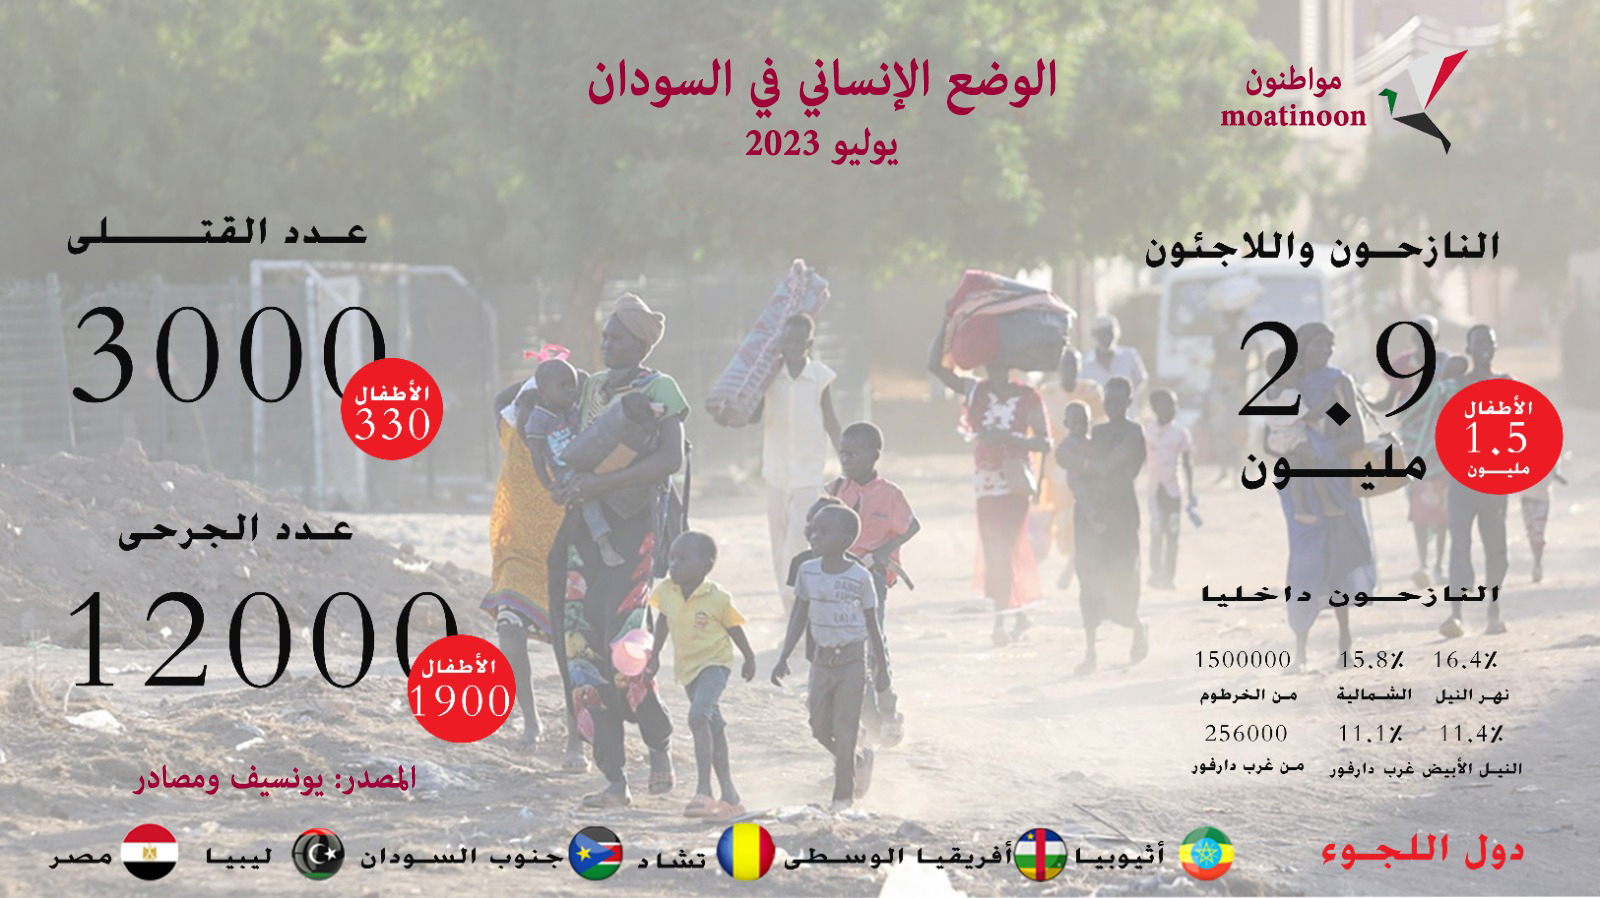 تقرير اليونيسف عن الوضع الإنساني في السودان حتى 6 يوليو 2023
